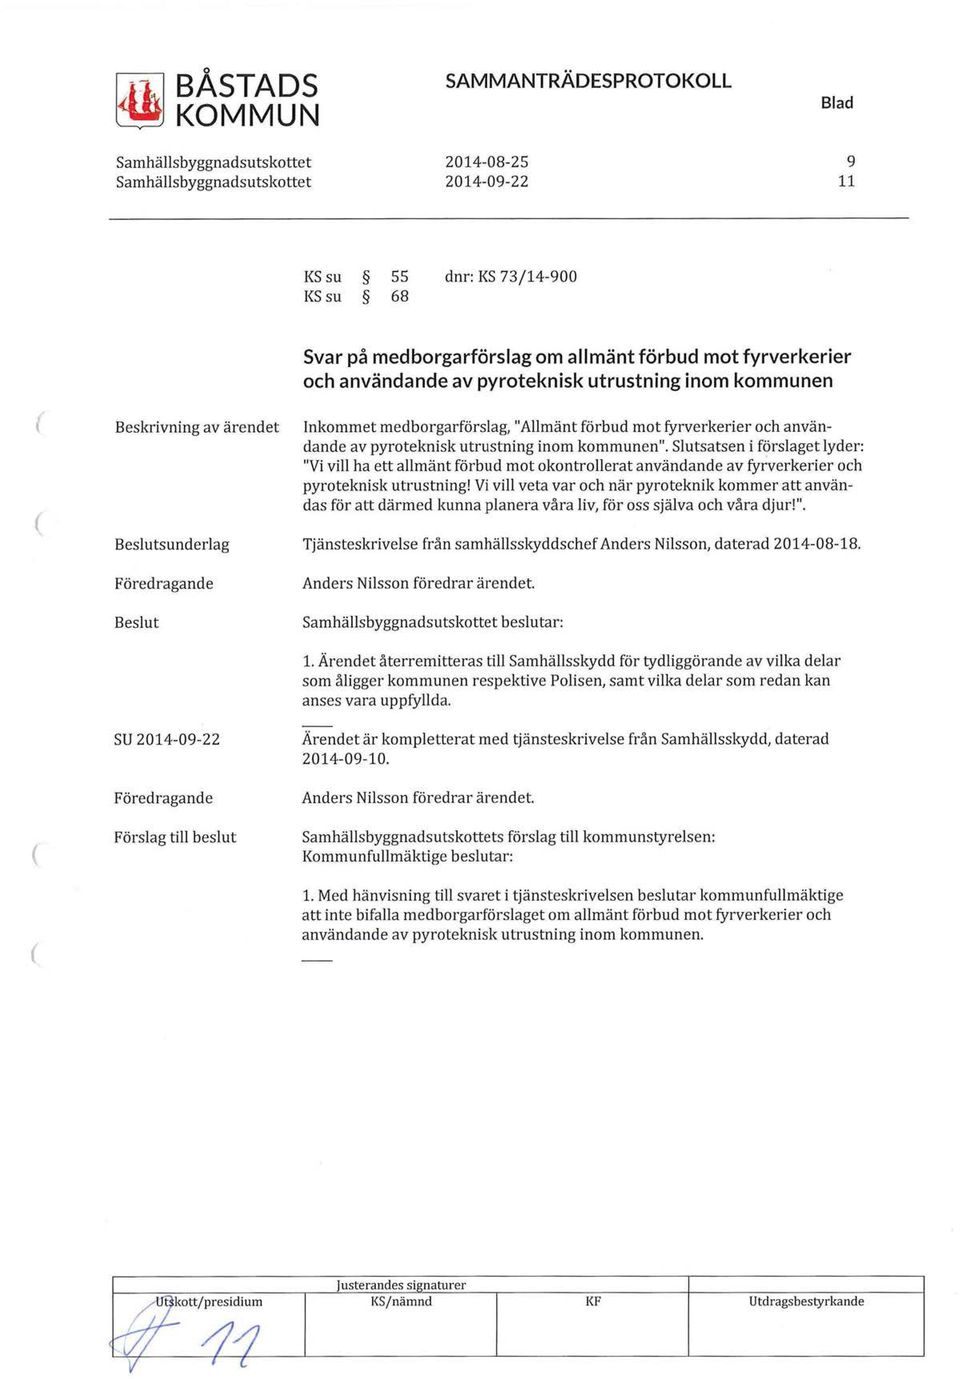 Slutsatsen i förslaget lyder: "Vi vill ha ett allmänt förbud mot okontrollerat användande av fyfverkerier och pyroteknisk utrustning!